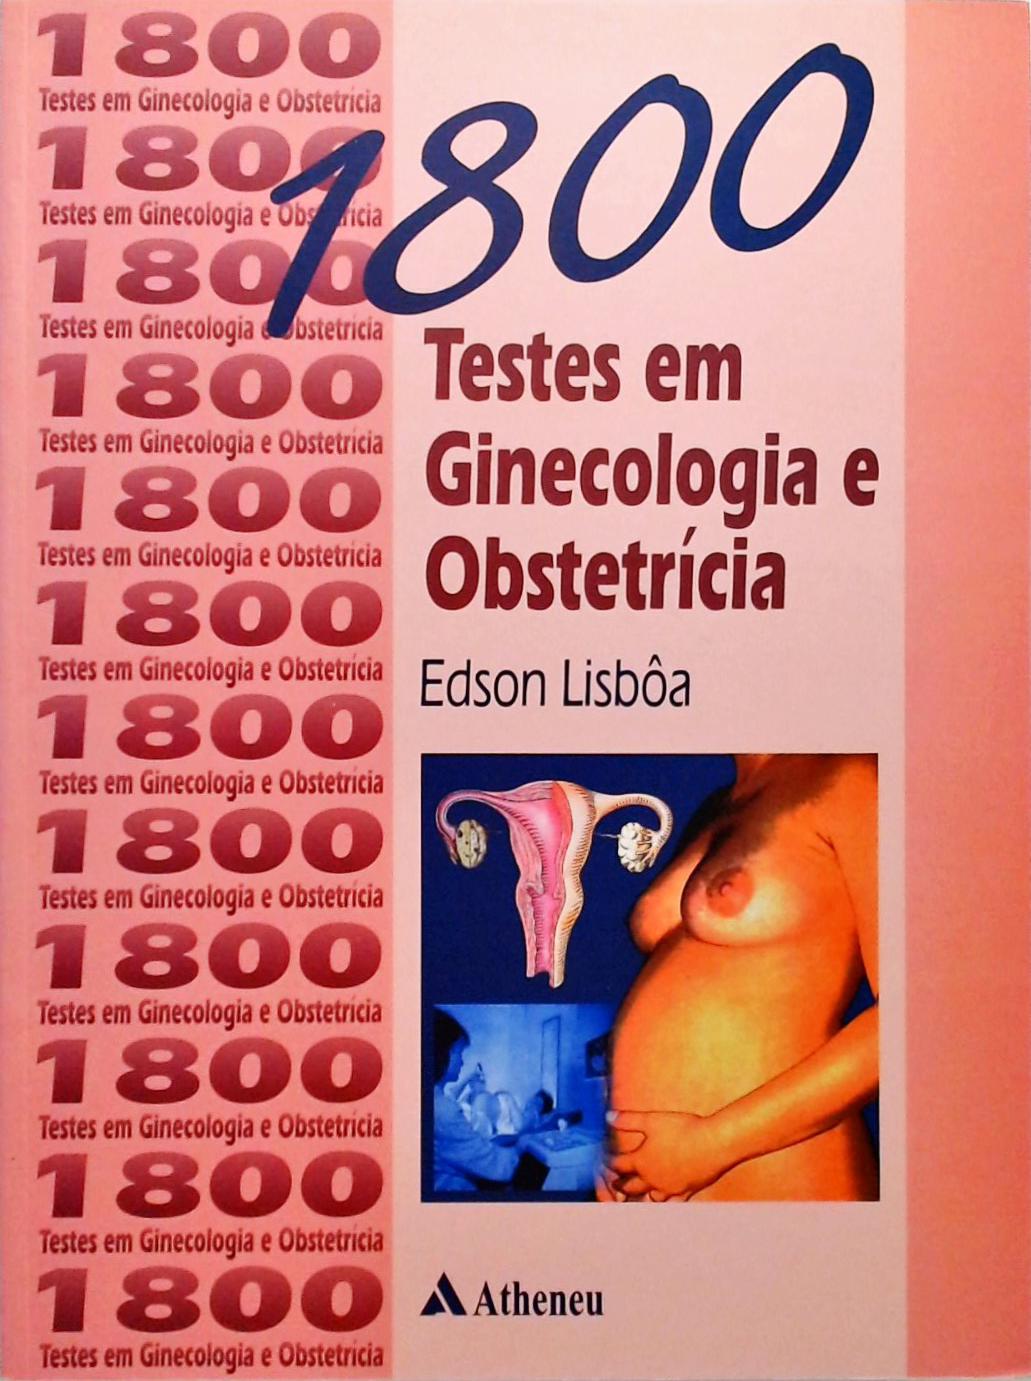 1800 testes em ginecologia e obstetrícia